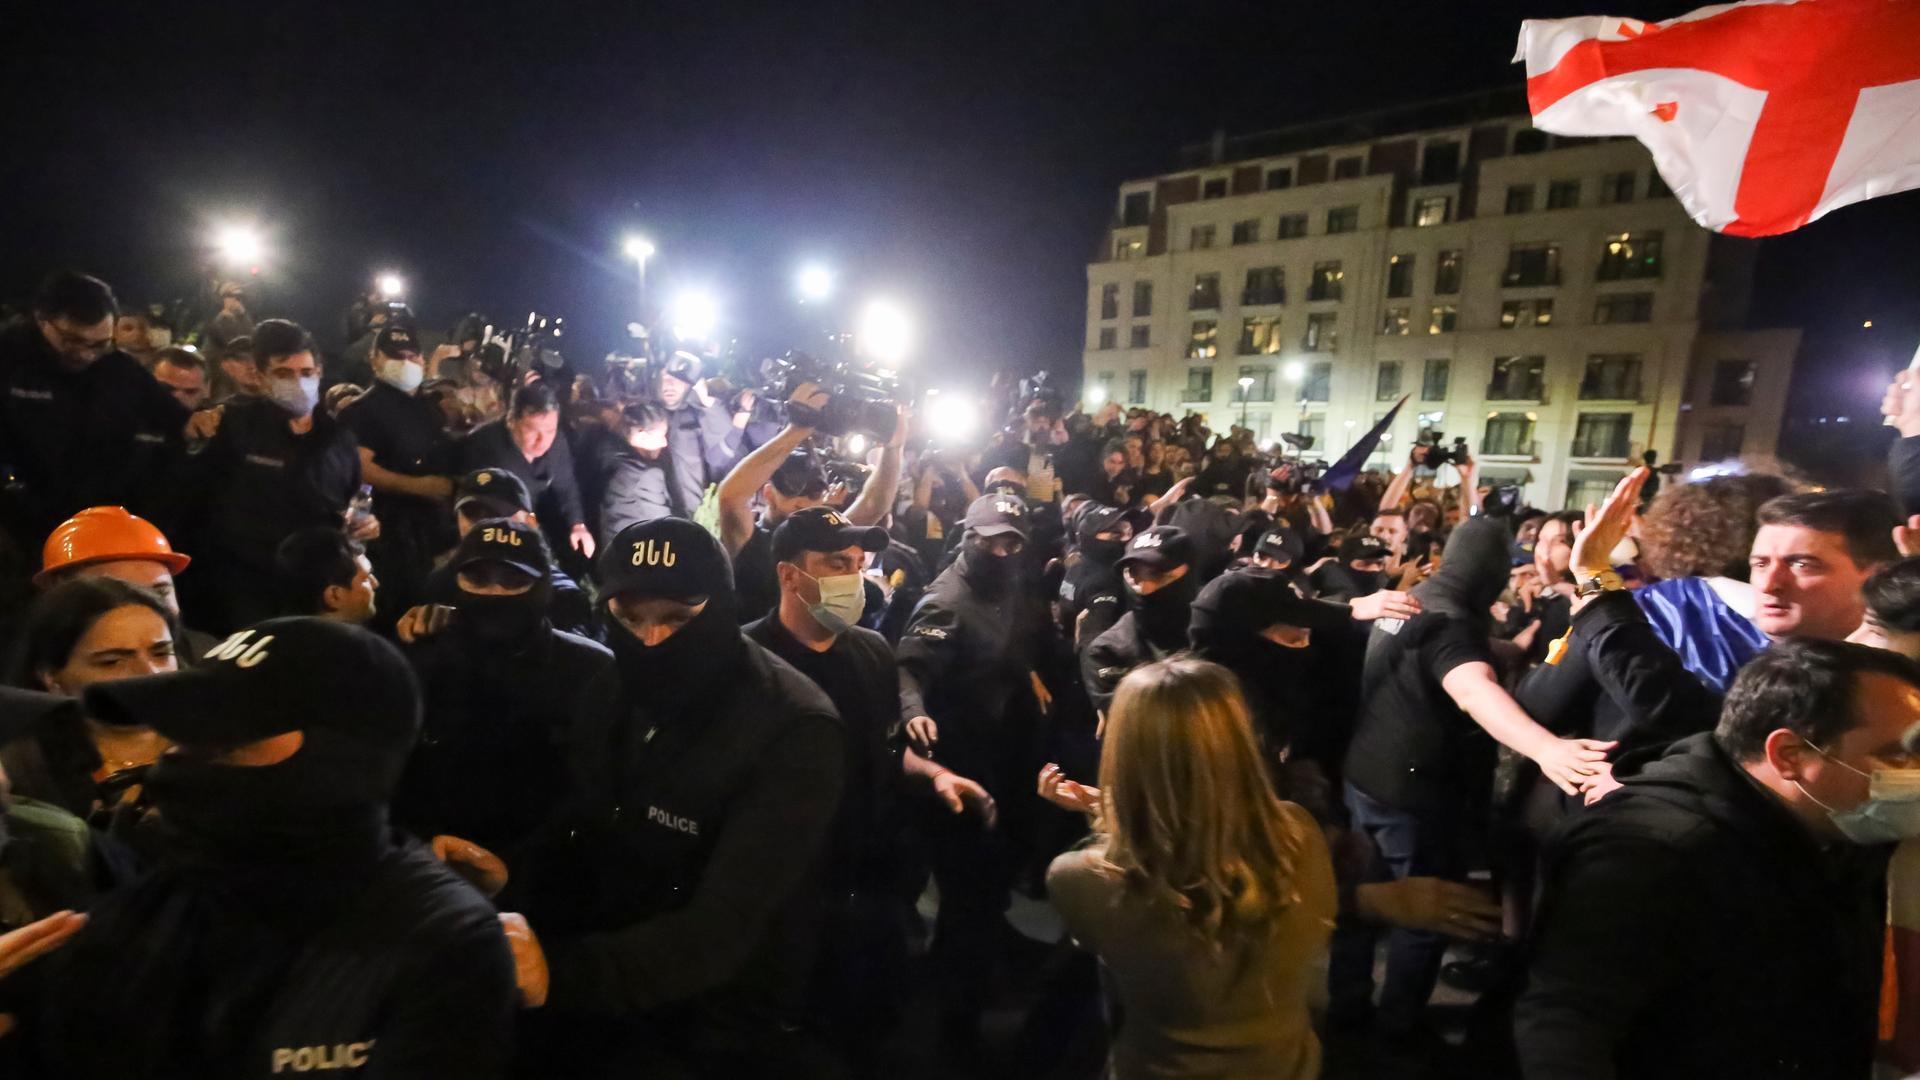 Vermummte Polizisten in Uniform versuchen, Demonstranten aufzuhalten, die vor dem Parlamentsgebäude in Tiflis versammelt haben. 